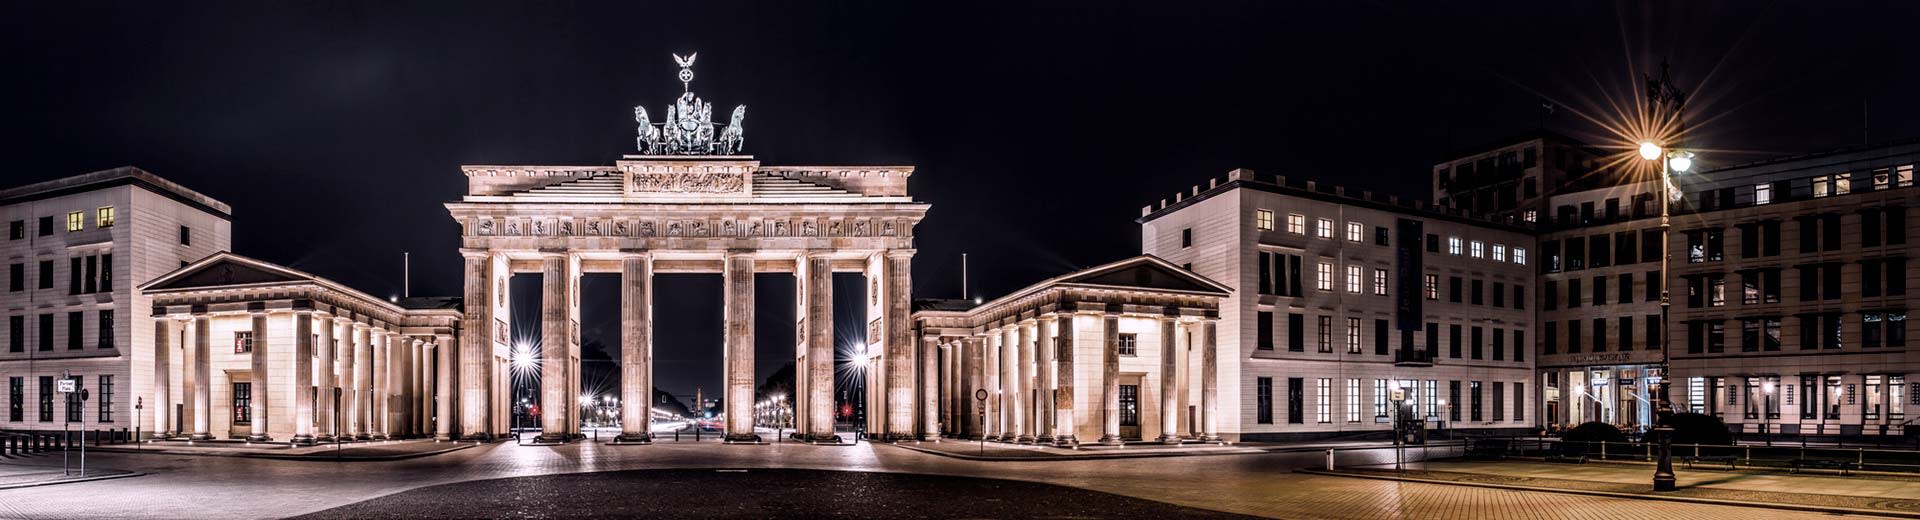 Puerta de Brandenburg en Berlín por la noche, con las luces iluminando la estructura.